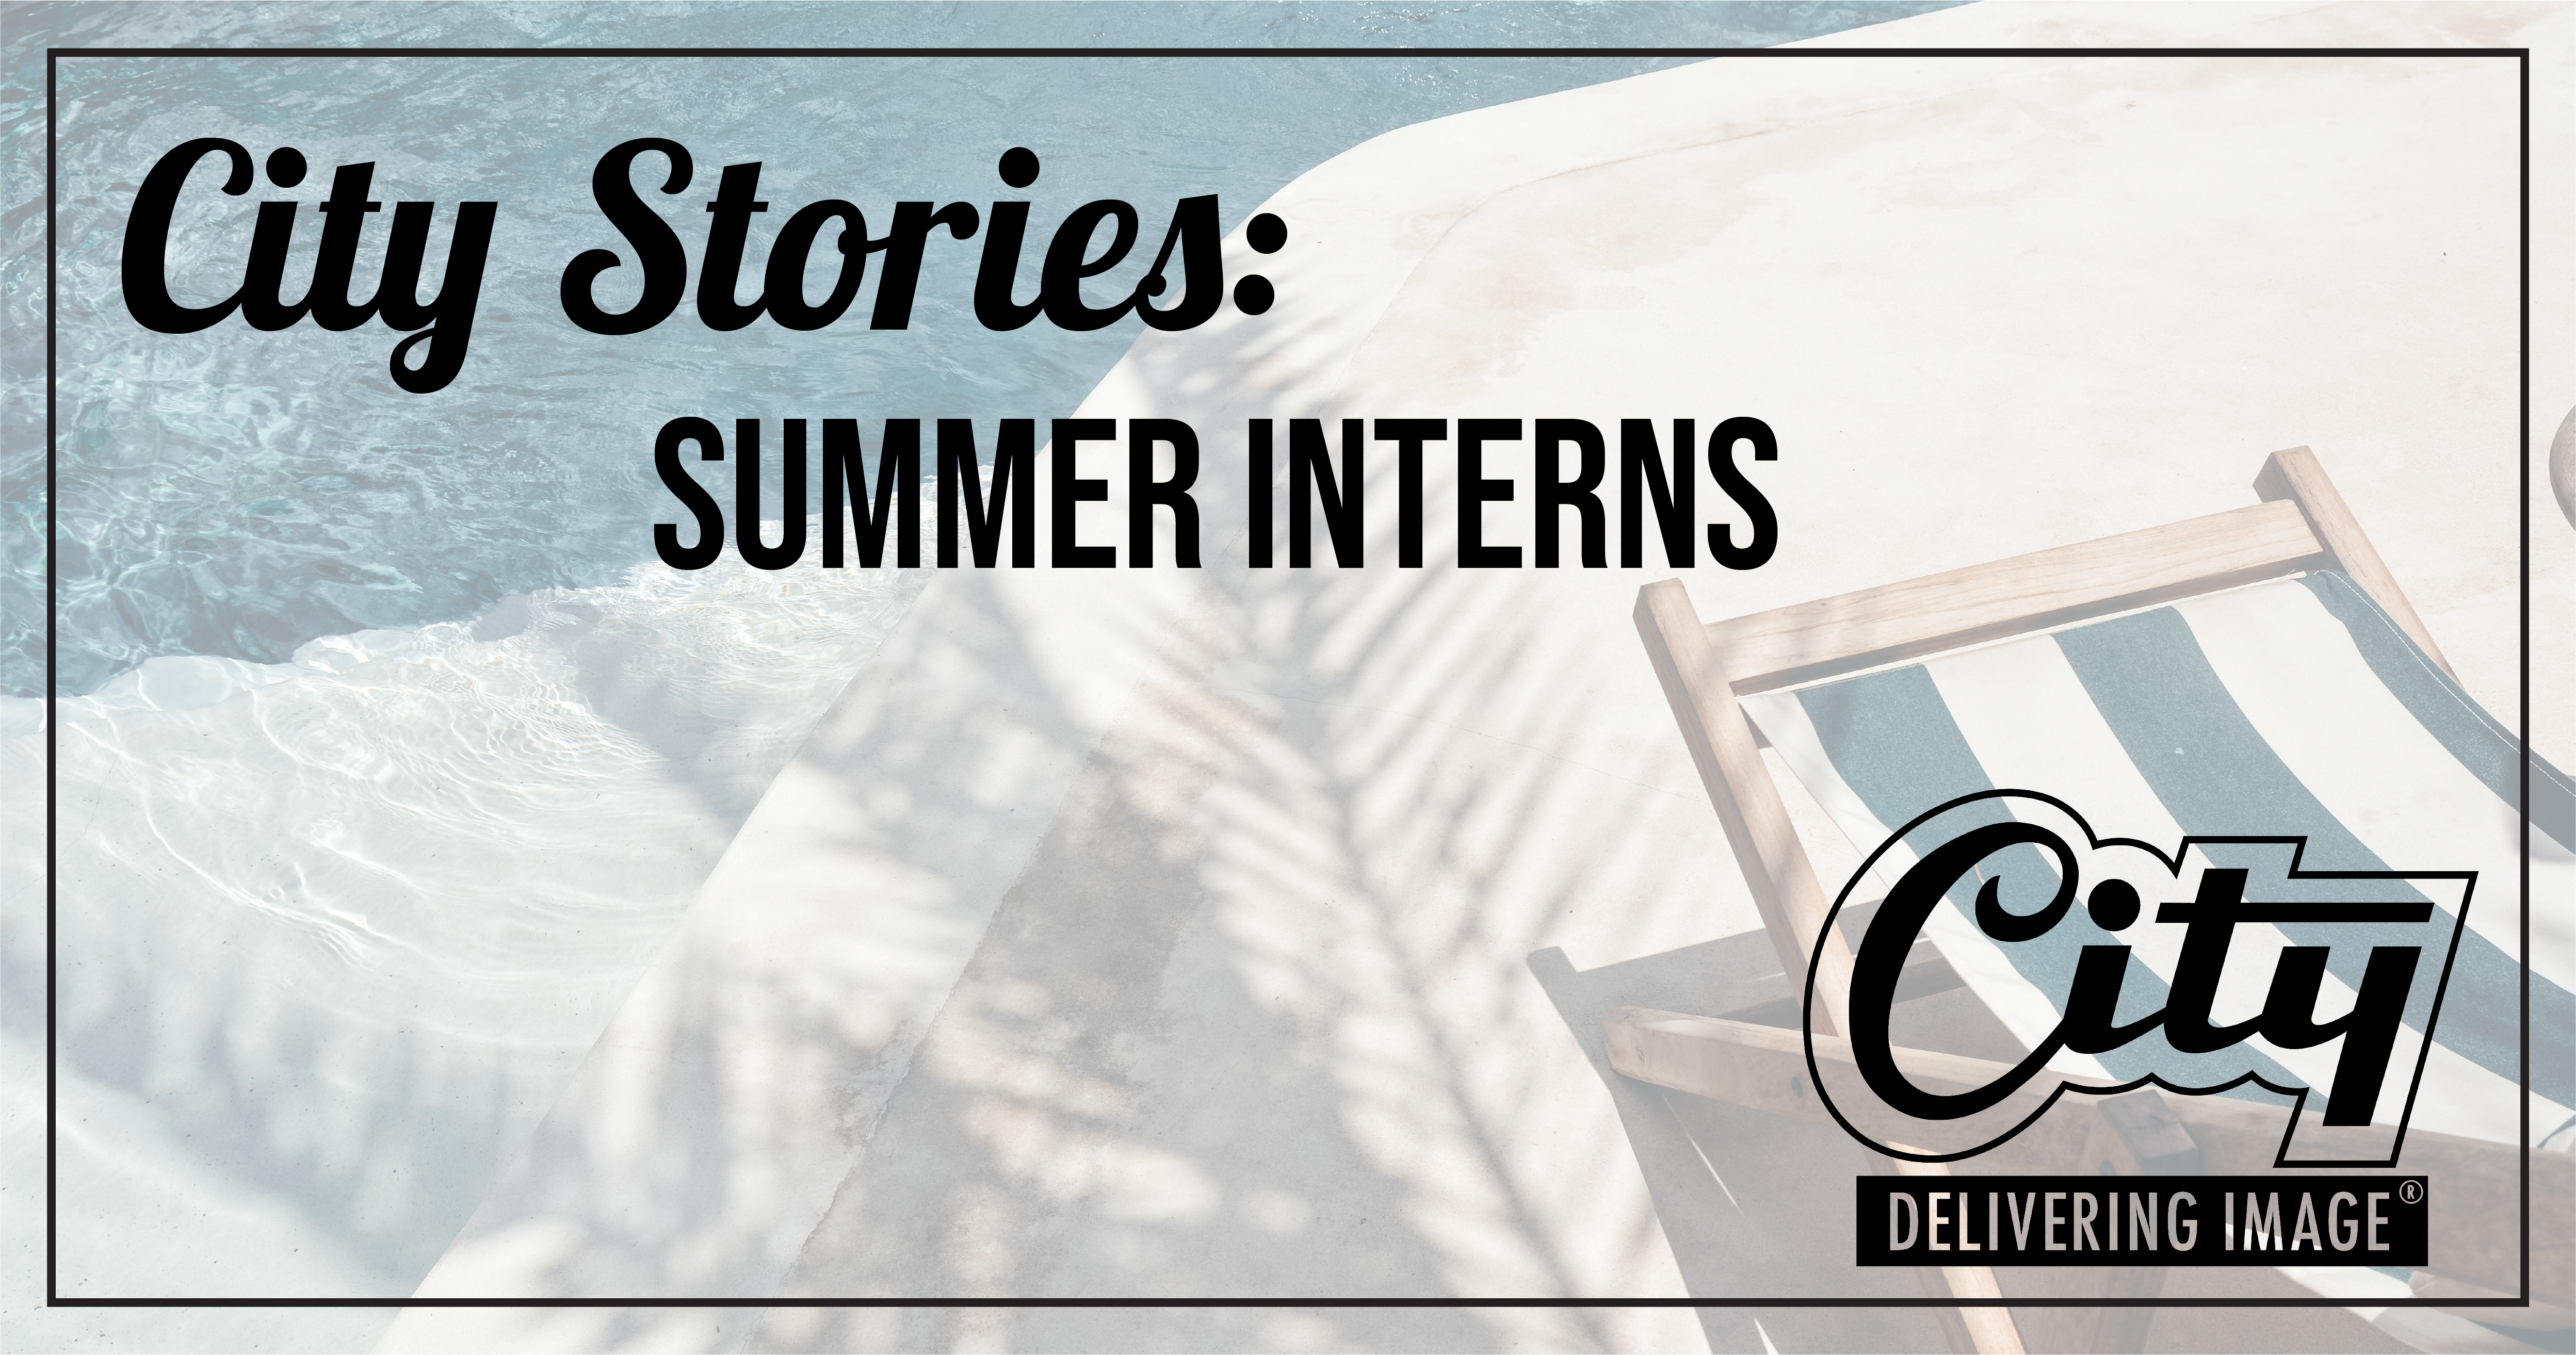 City Stories Summer Interns